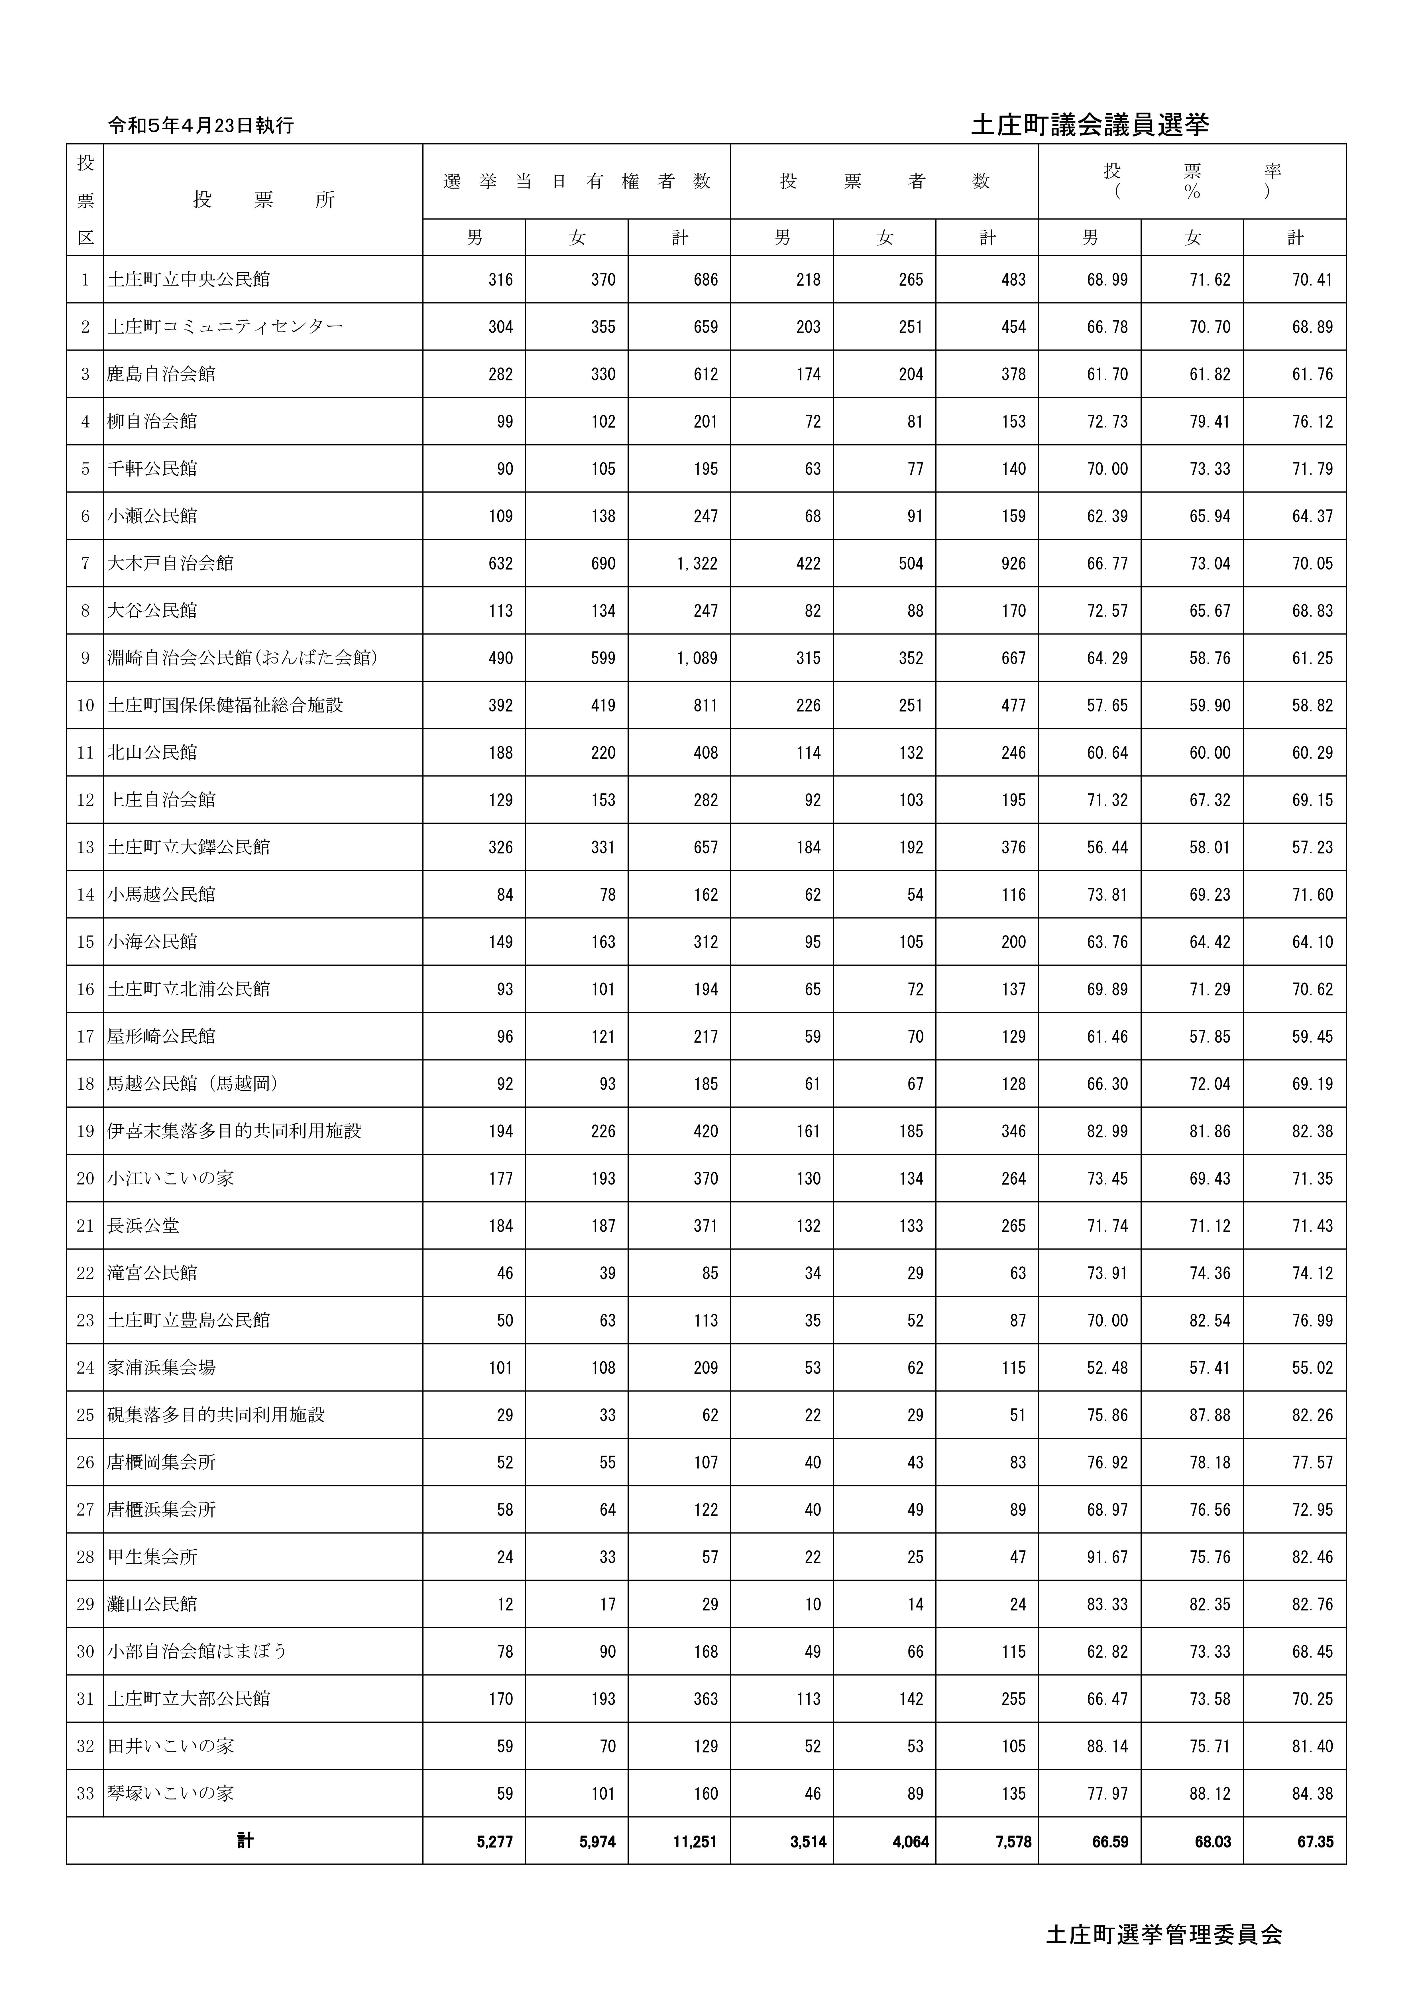 土庄町議会議員選挙投票区別投票者数